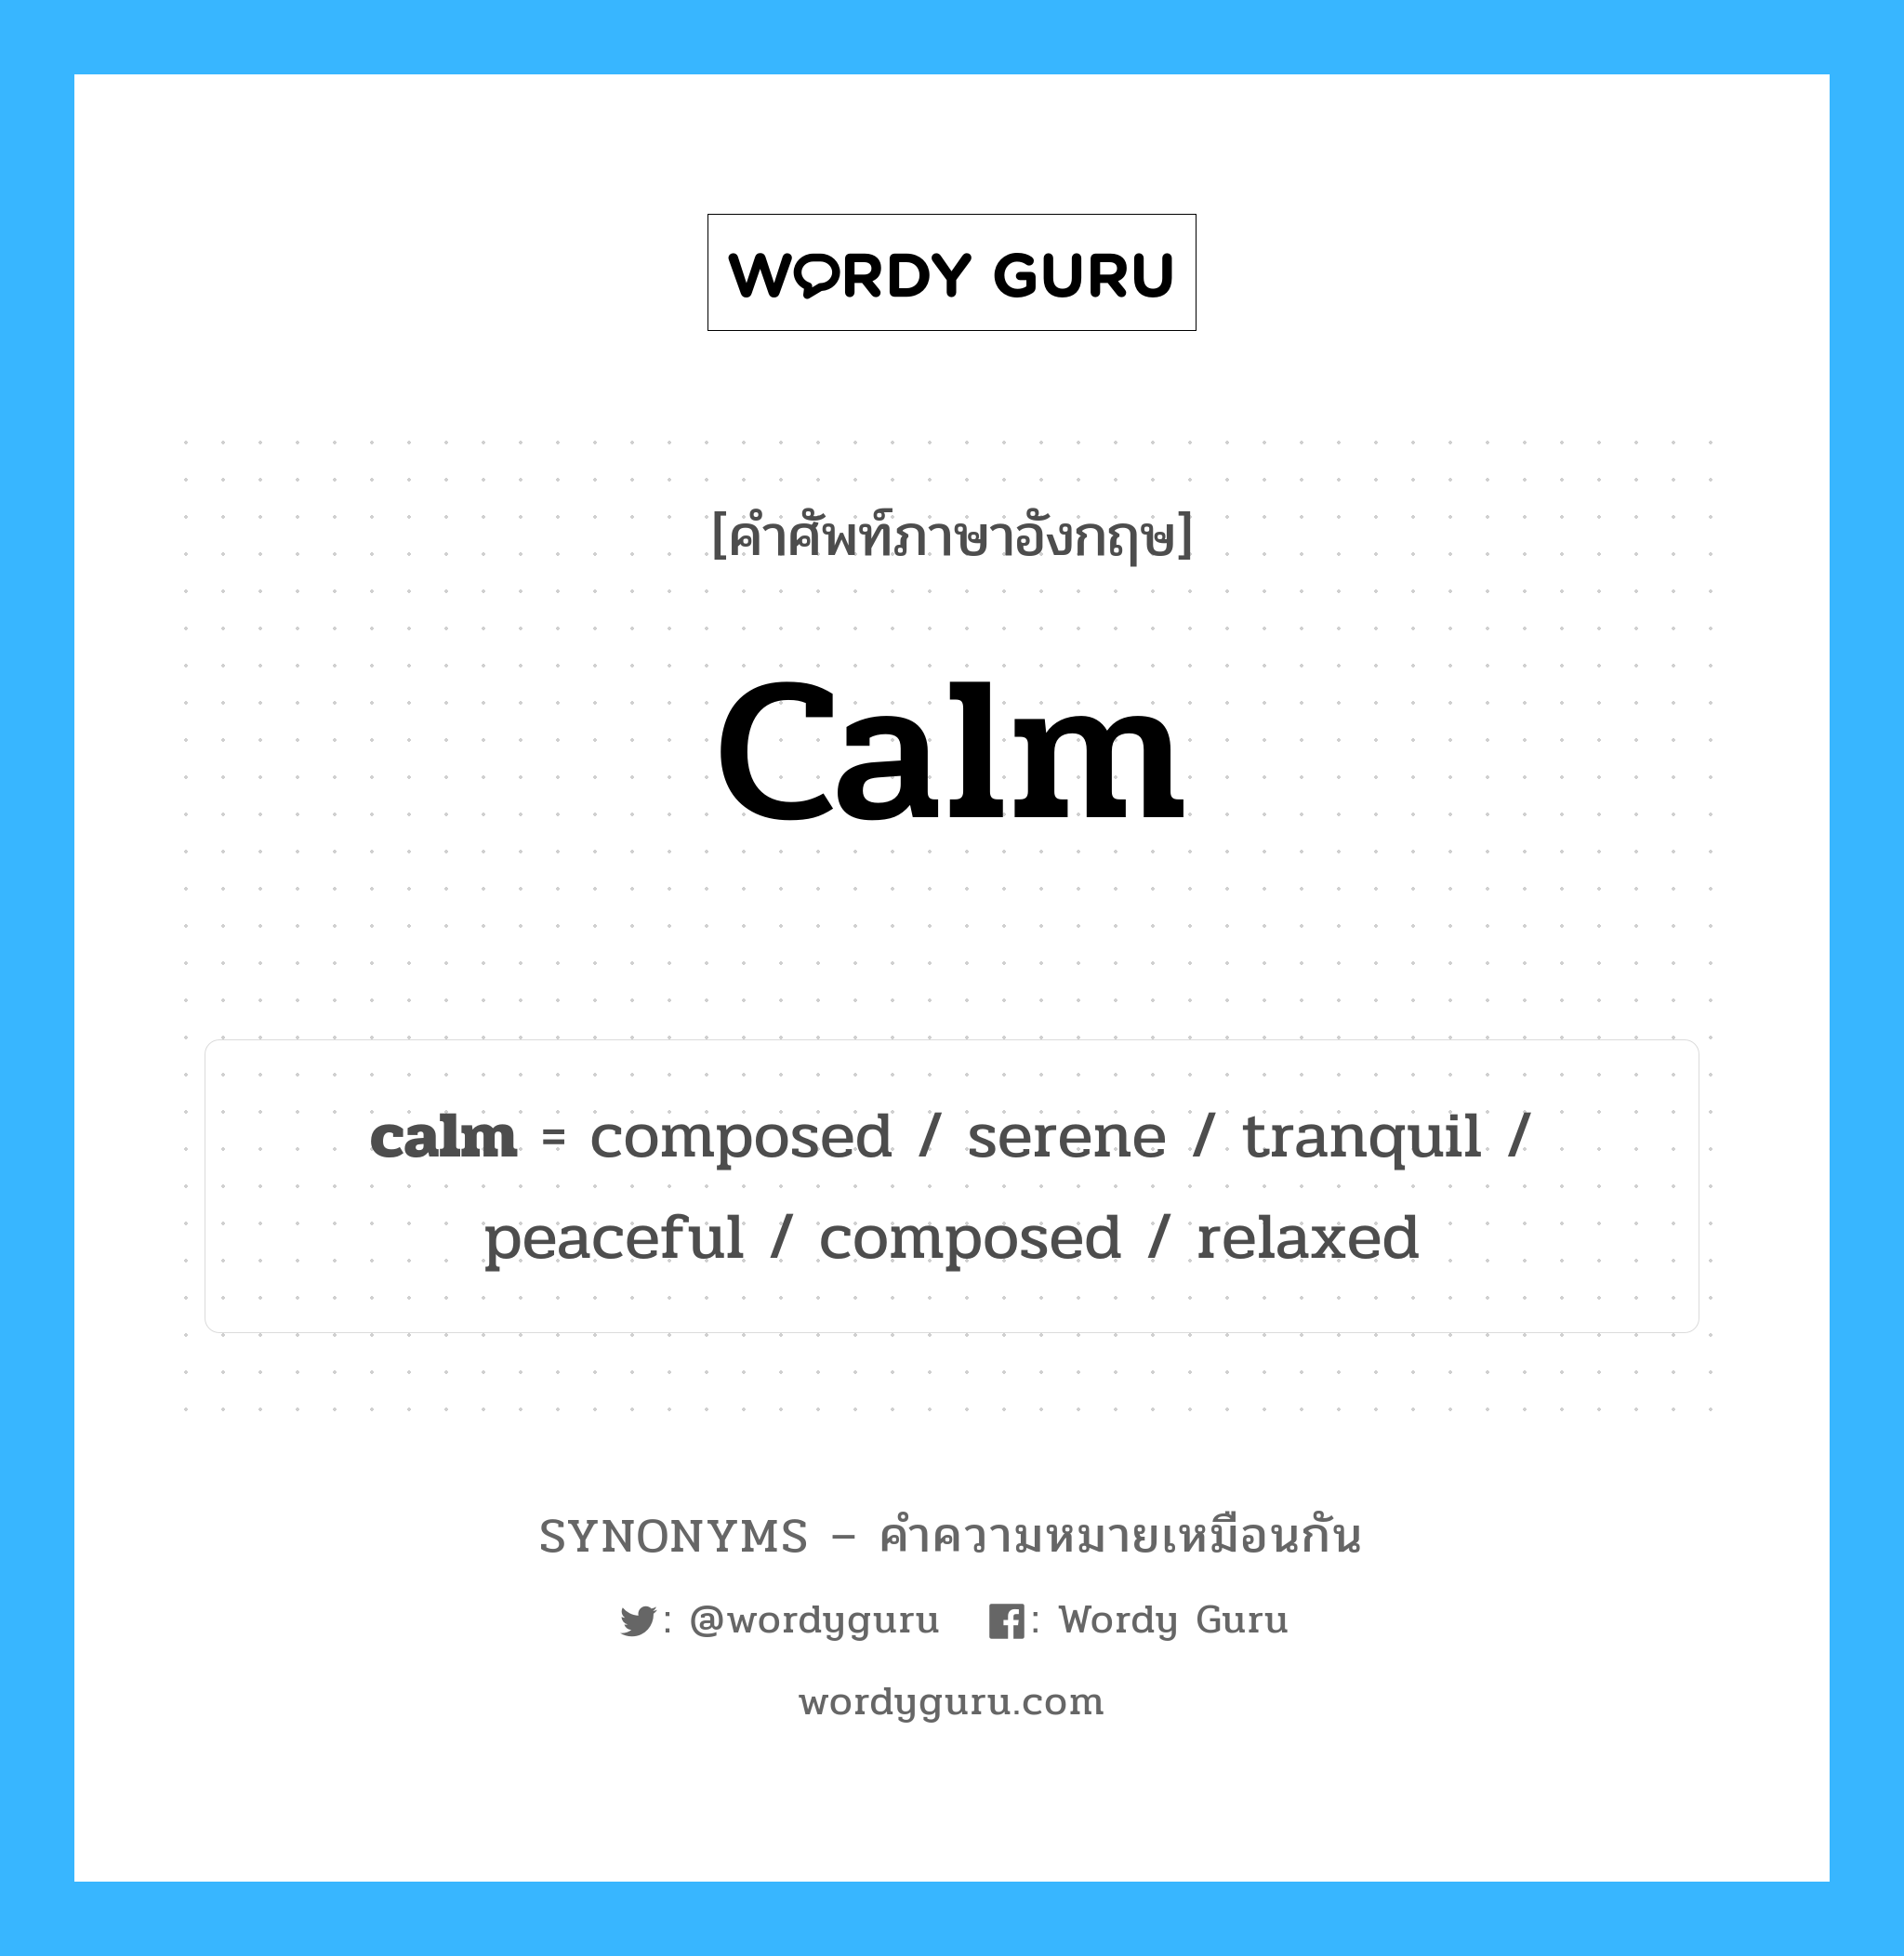 peaceful เป็นหนึ่งใน calm และมีคำอื่น ๆ อีกดังนี้, คำศัพท์ภาษาอังกฤษ peaceful ความหมายคล้ายกันกับ calm แปลว่า เงียบสงบ หมวด calm